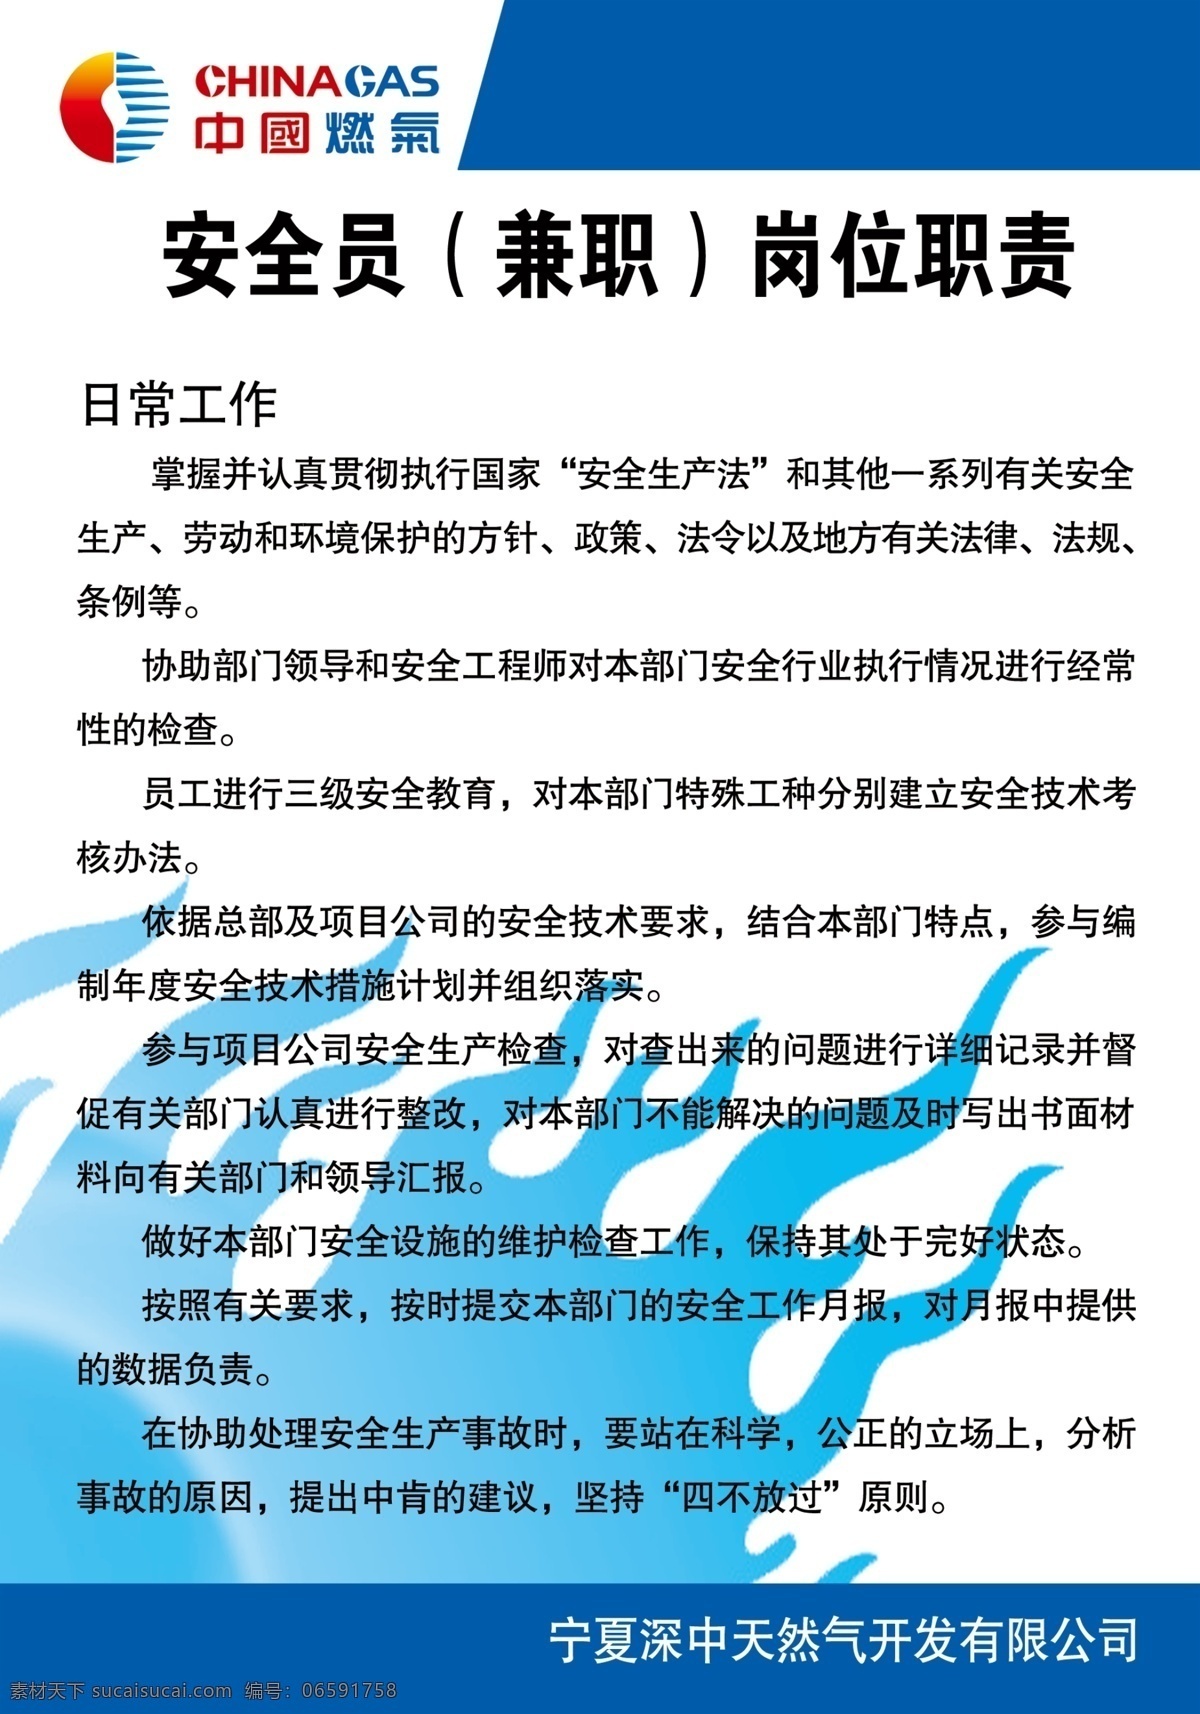 安全员 兼职 岗位职责 中国燃气 制度 天然气 展板模板 广告设计模板 源文件